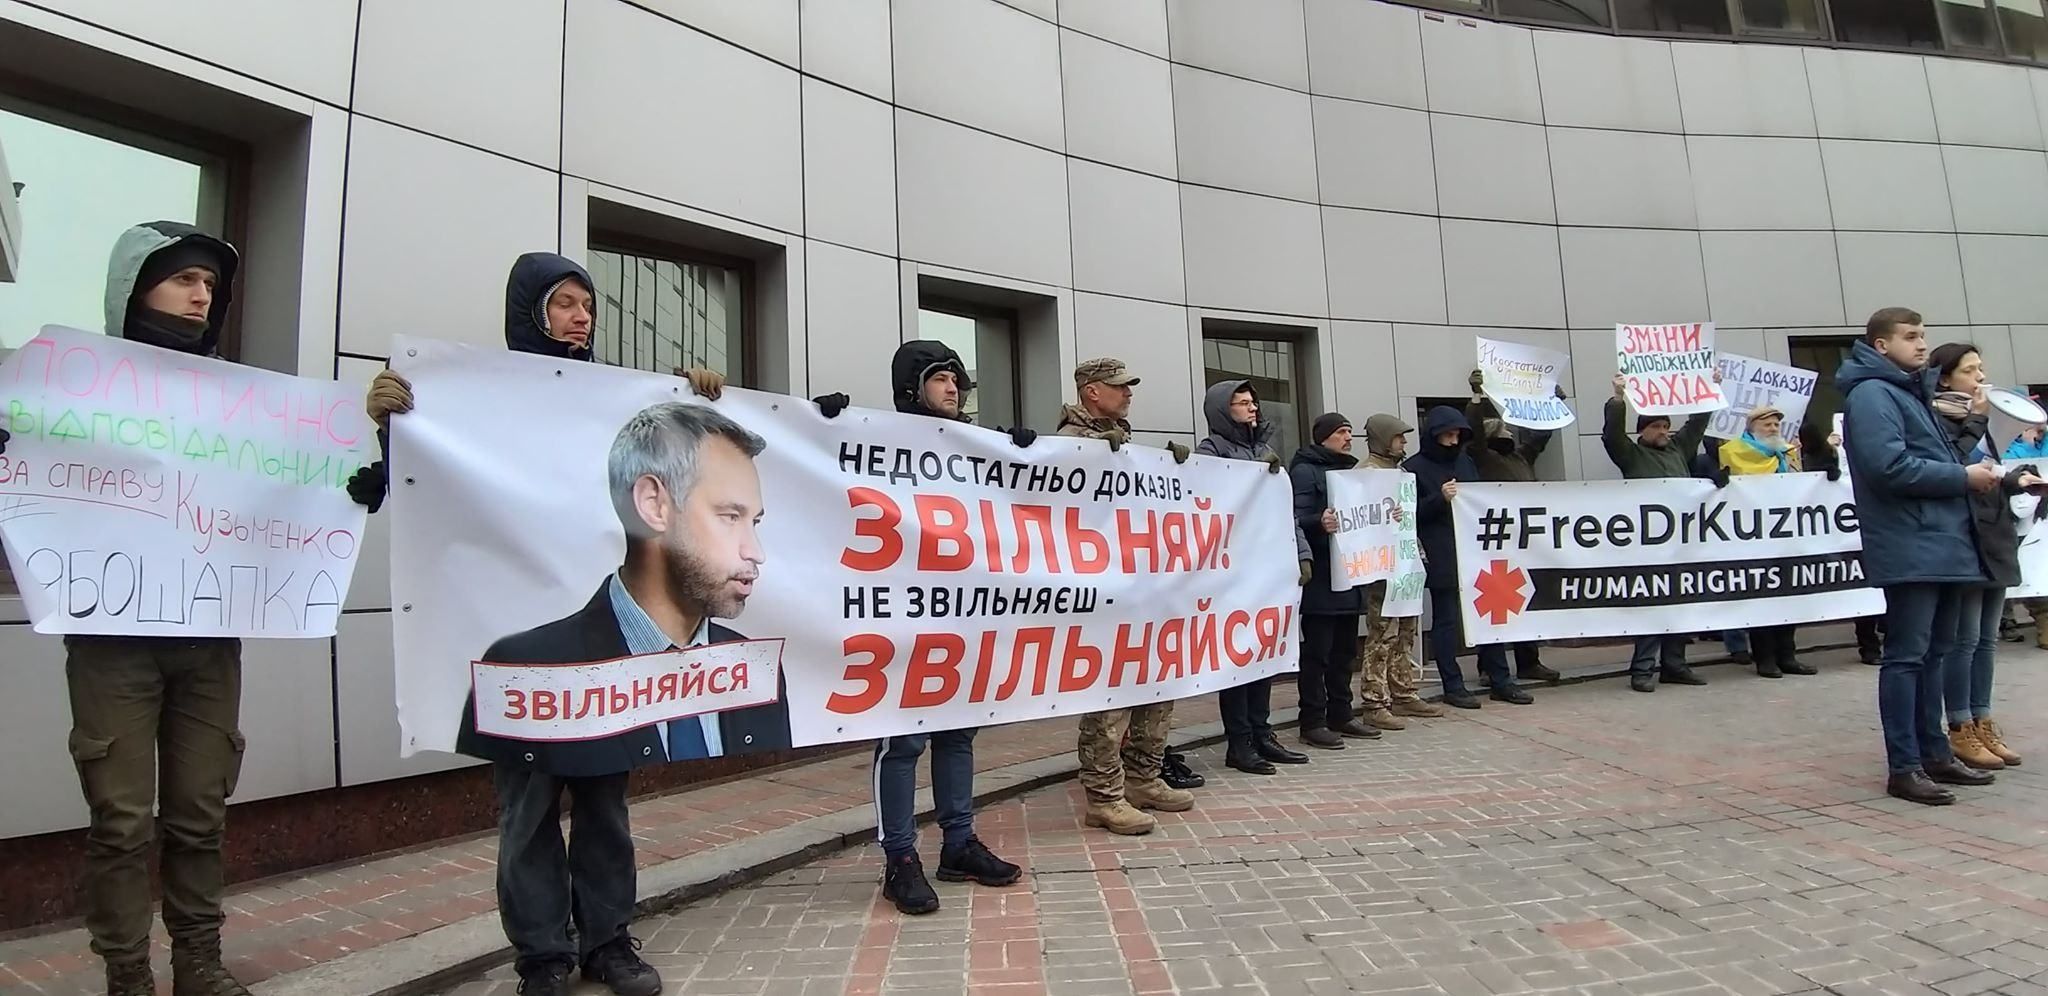 Активисты пикетировали офис Генпрокурора и Апелляционный суд в поддержку Кузьменко: фото, видео